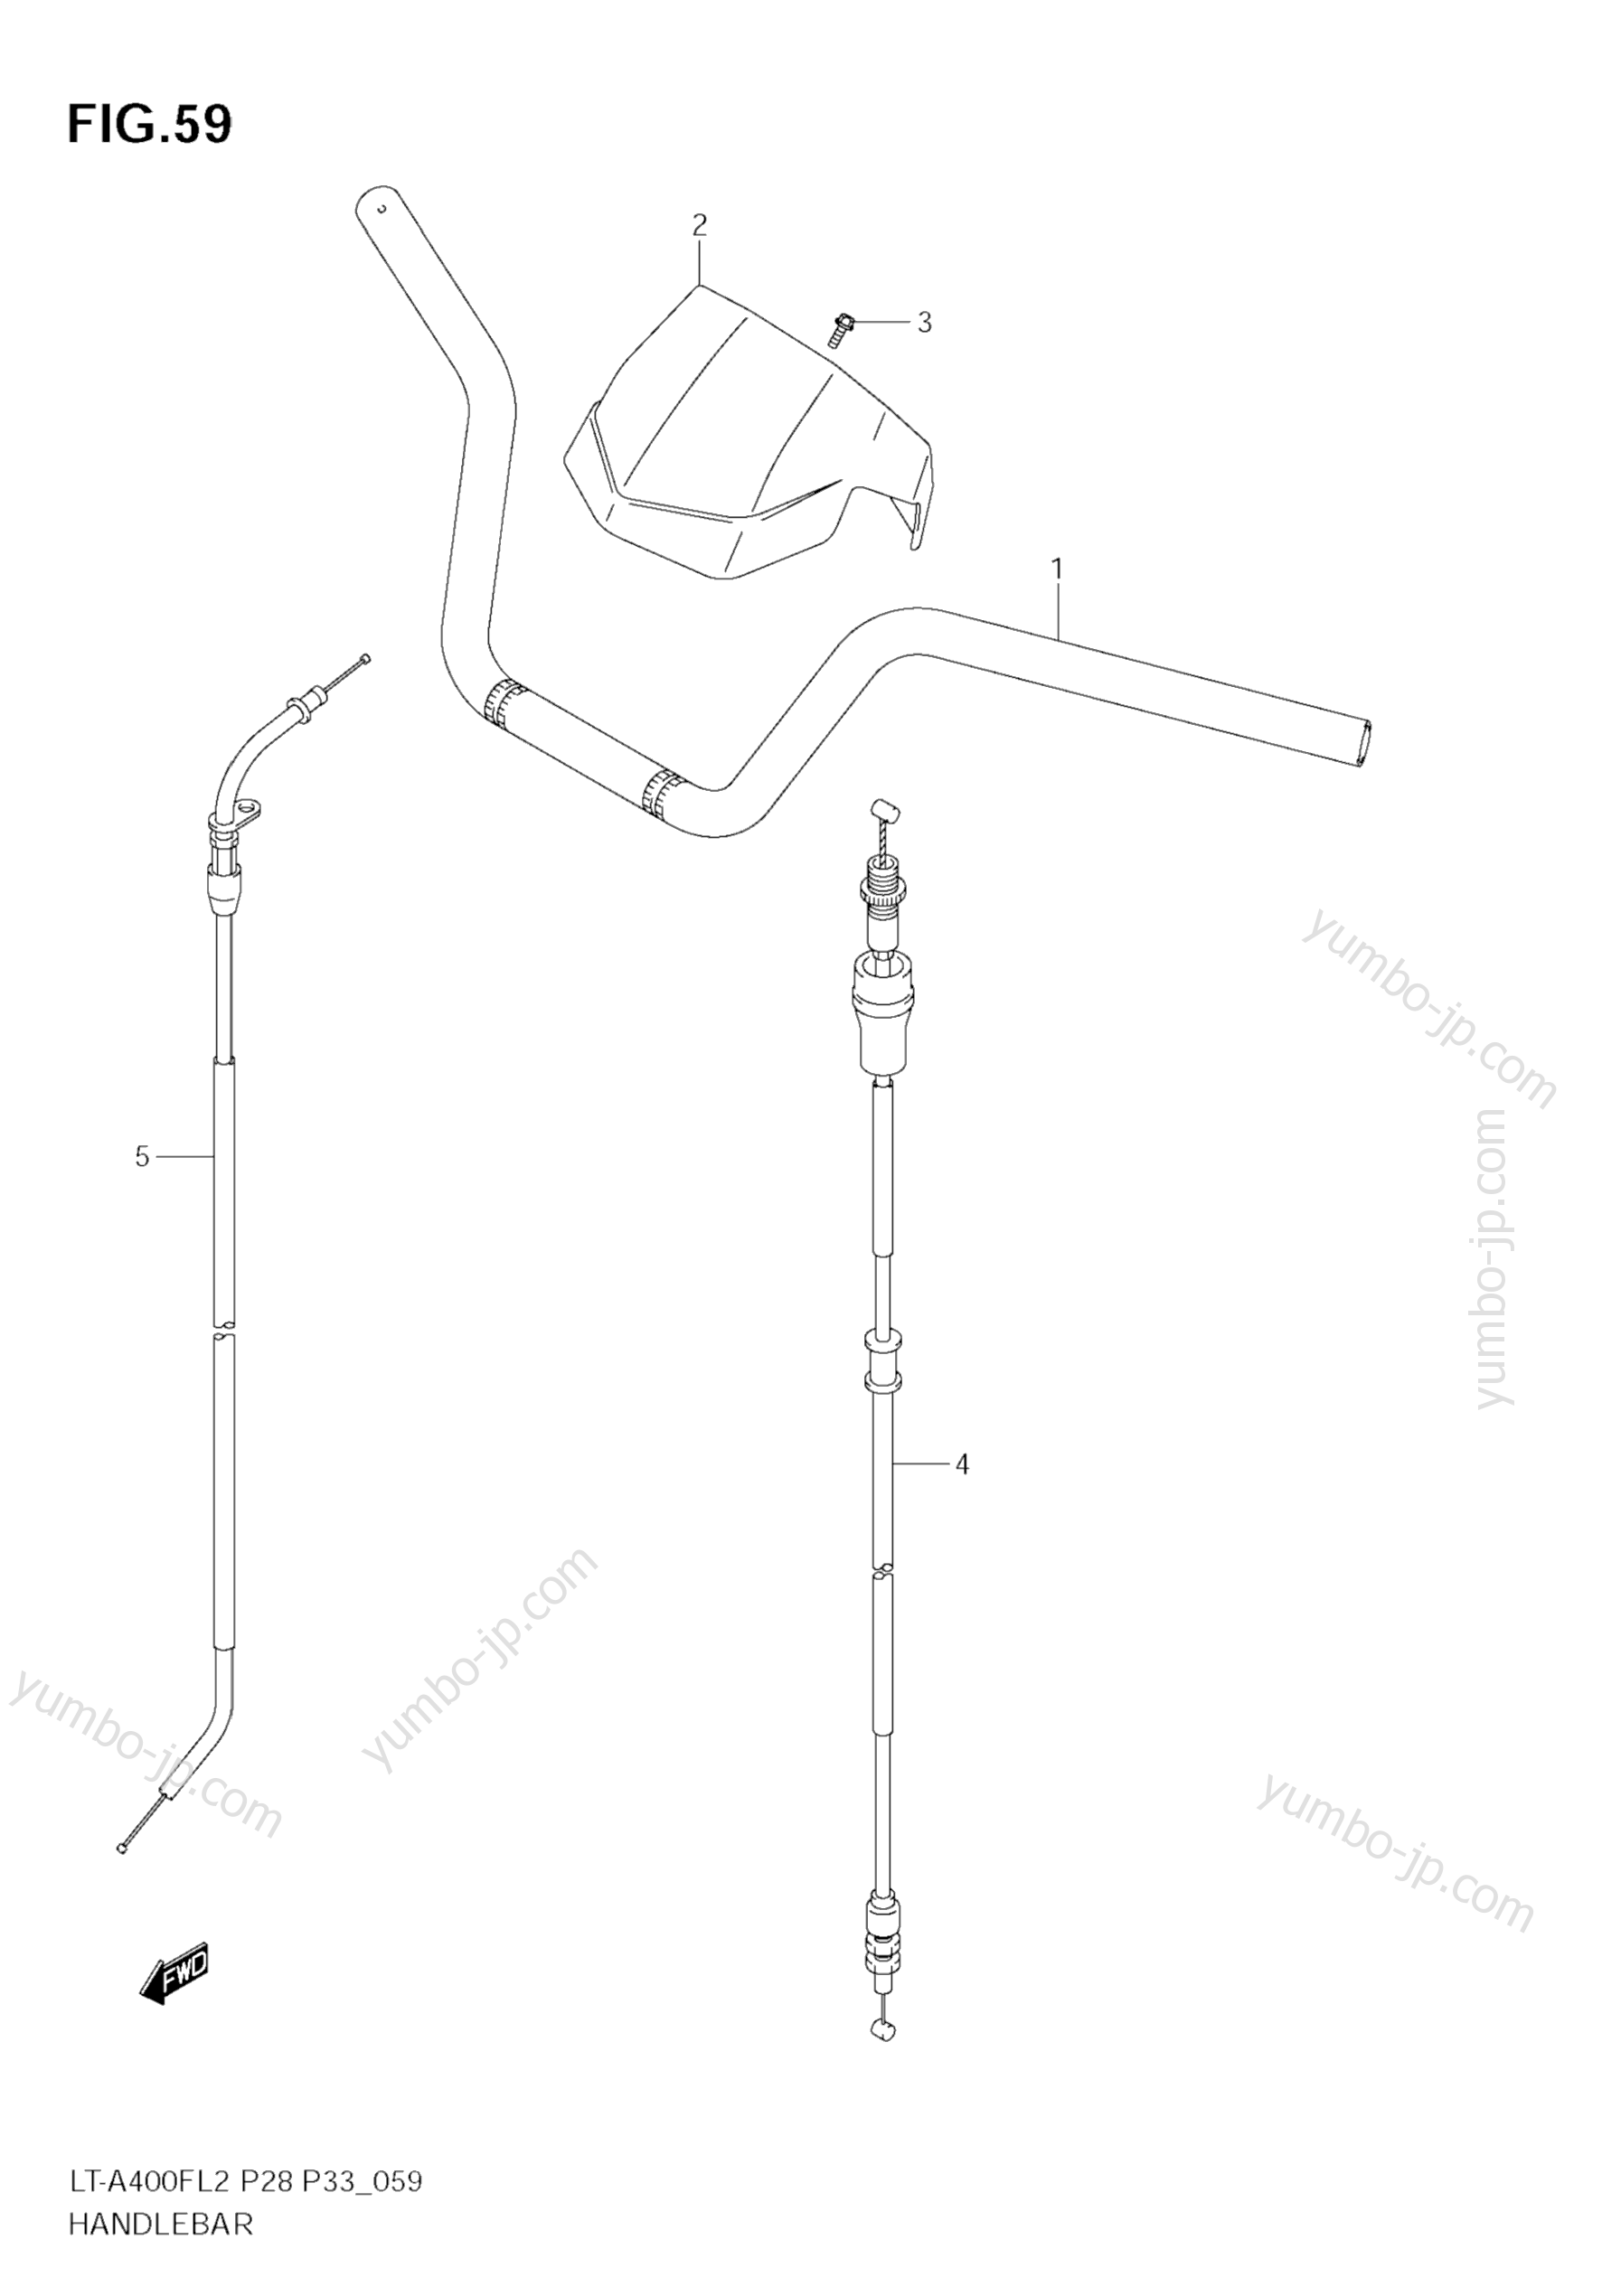 Румпель (рукоятка управления) для квадроциклов SUZUKI KingQuad (LT-A400FZ) 2012 г.